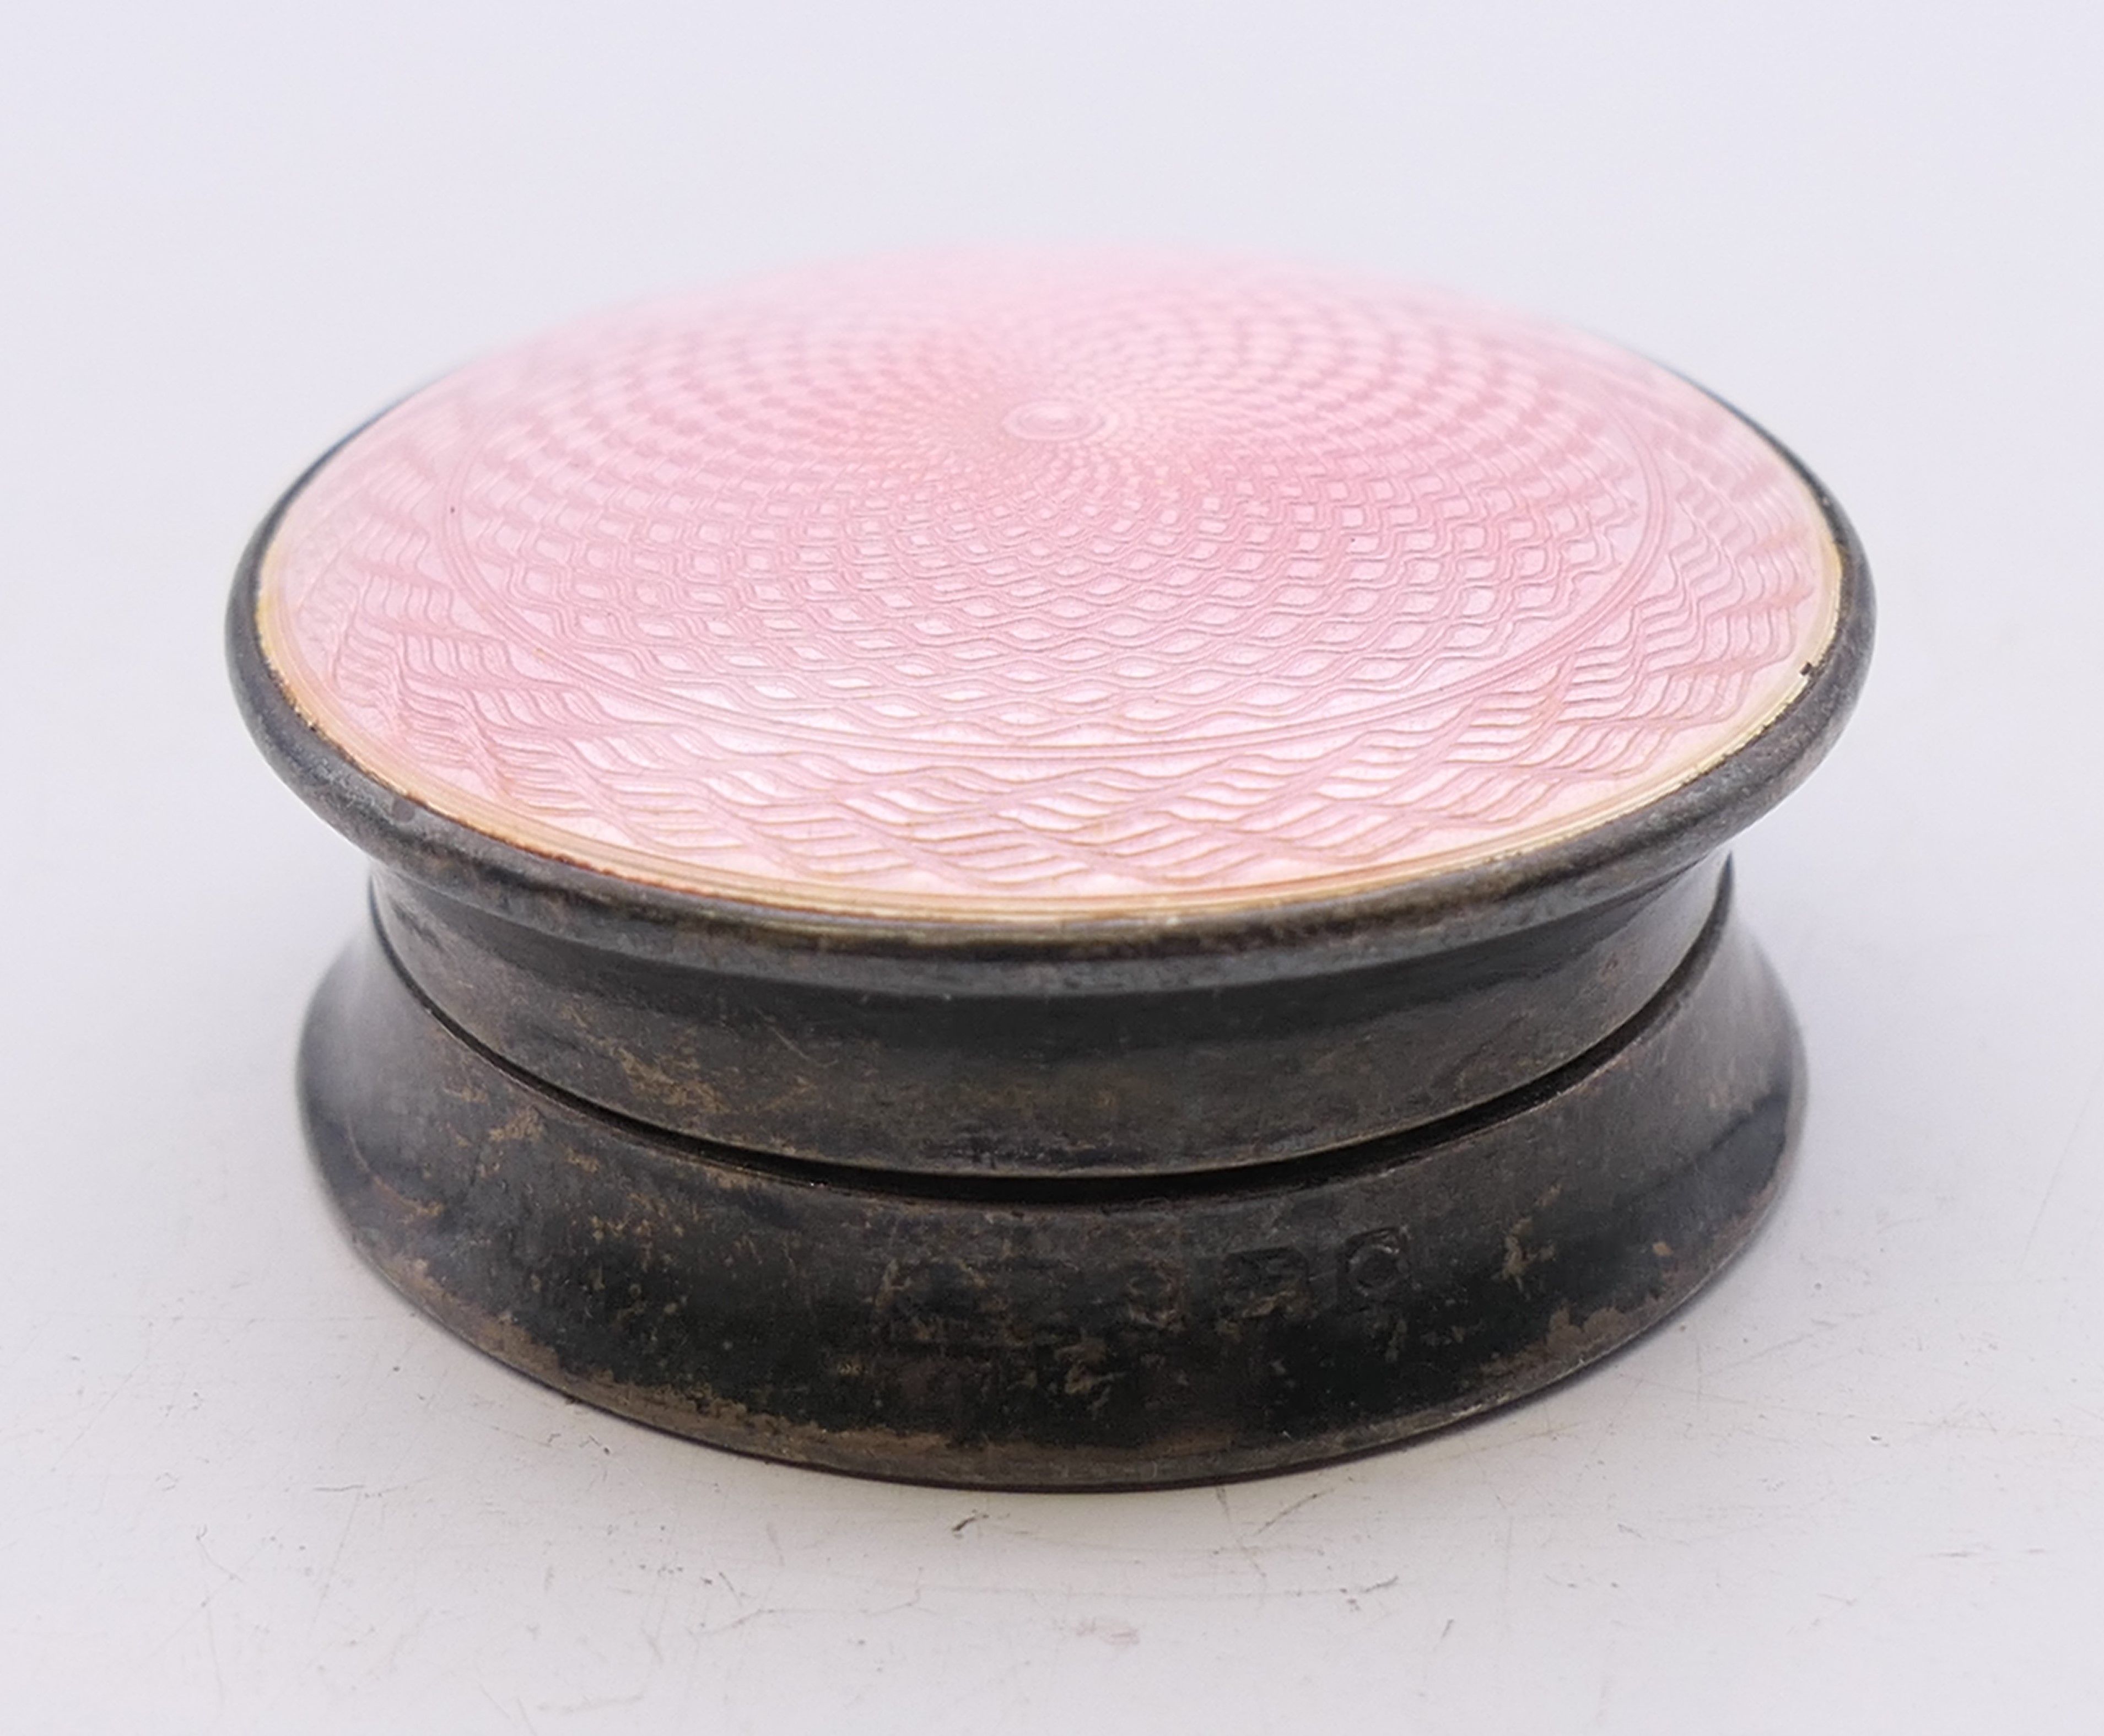 A silver and pink enamel balm pot. 3.75 cm diameter.